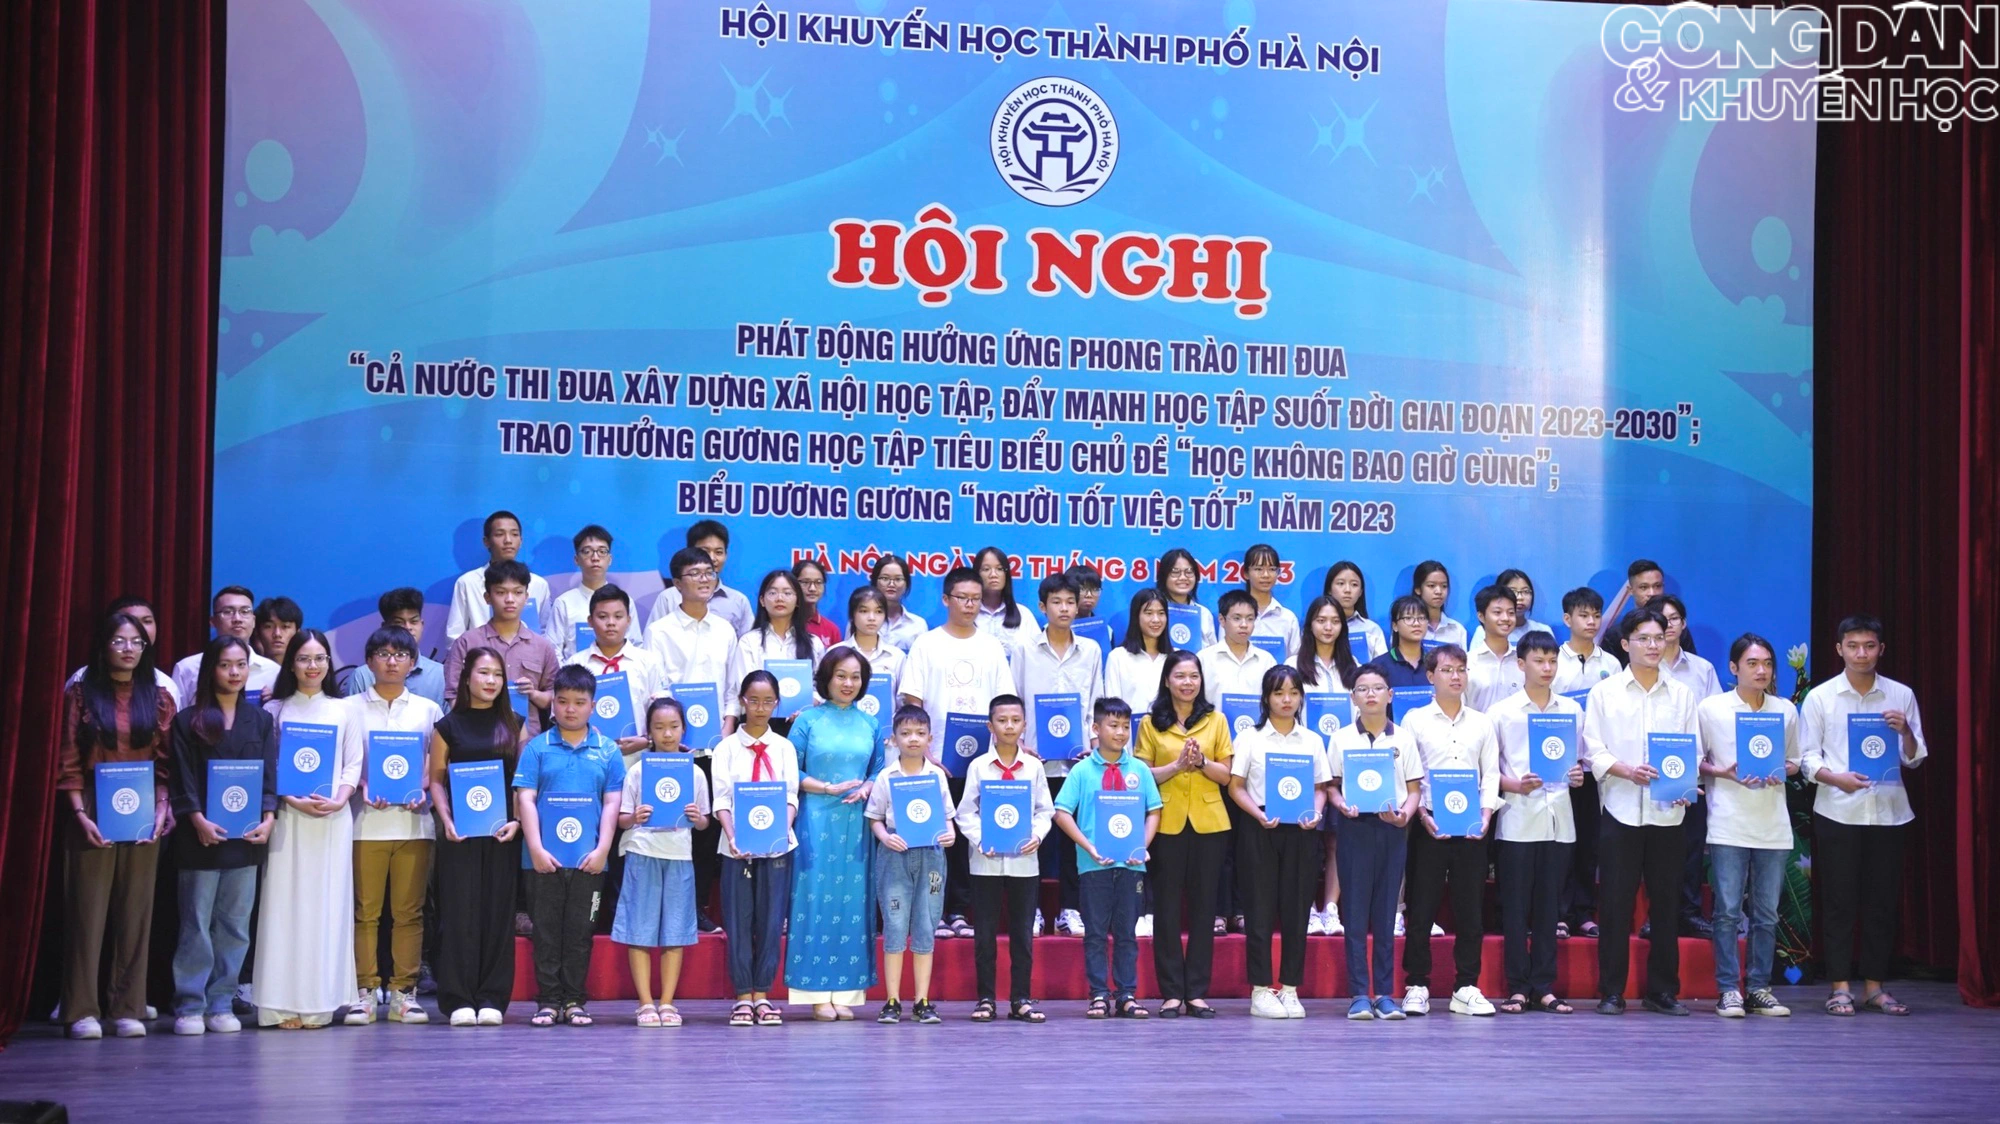 Hội Khuyến học thành phố Hà Nội phát động hưởng ứng phong trào thi đua xây dựng xã hội học tập, tự học suốt đời - Ảnh 10.